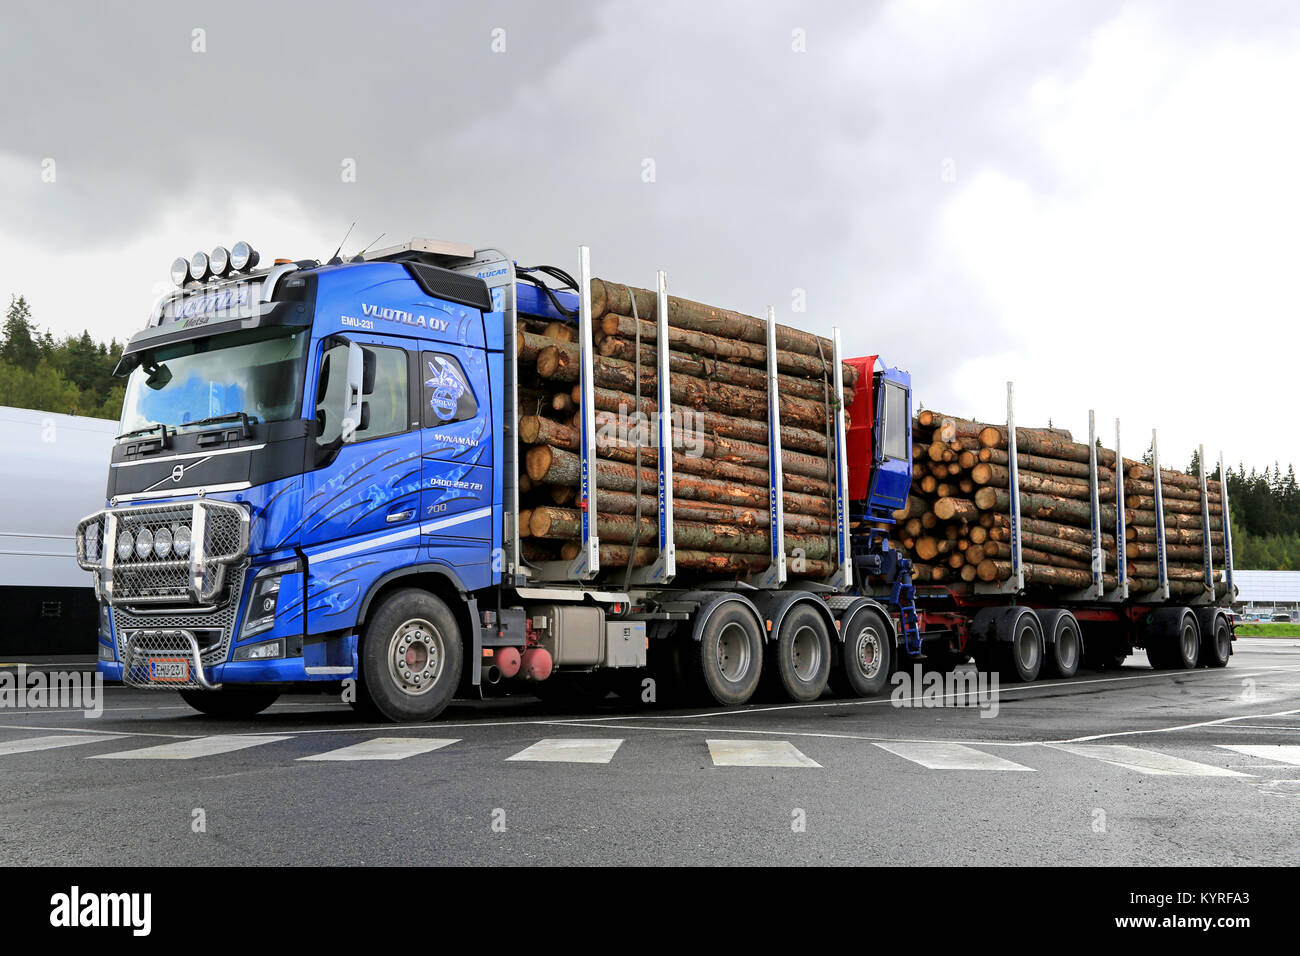 FORSSA, FINLANDE - le 28 août 2014 : Volvo FH16 700 chariot bois avec remorques à grumes épicéa. Rapports Metla croissance de 2  % dans le commerce de bois finlandais Extrêmes Janvier Ã août 20 Banque D'Images